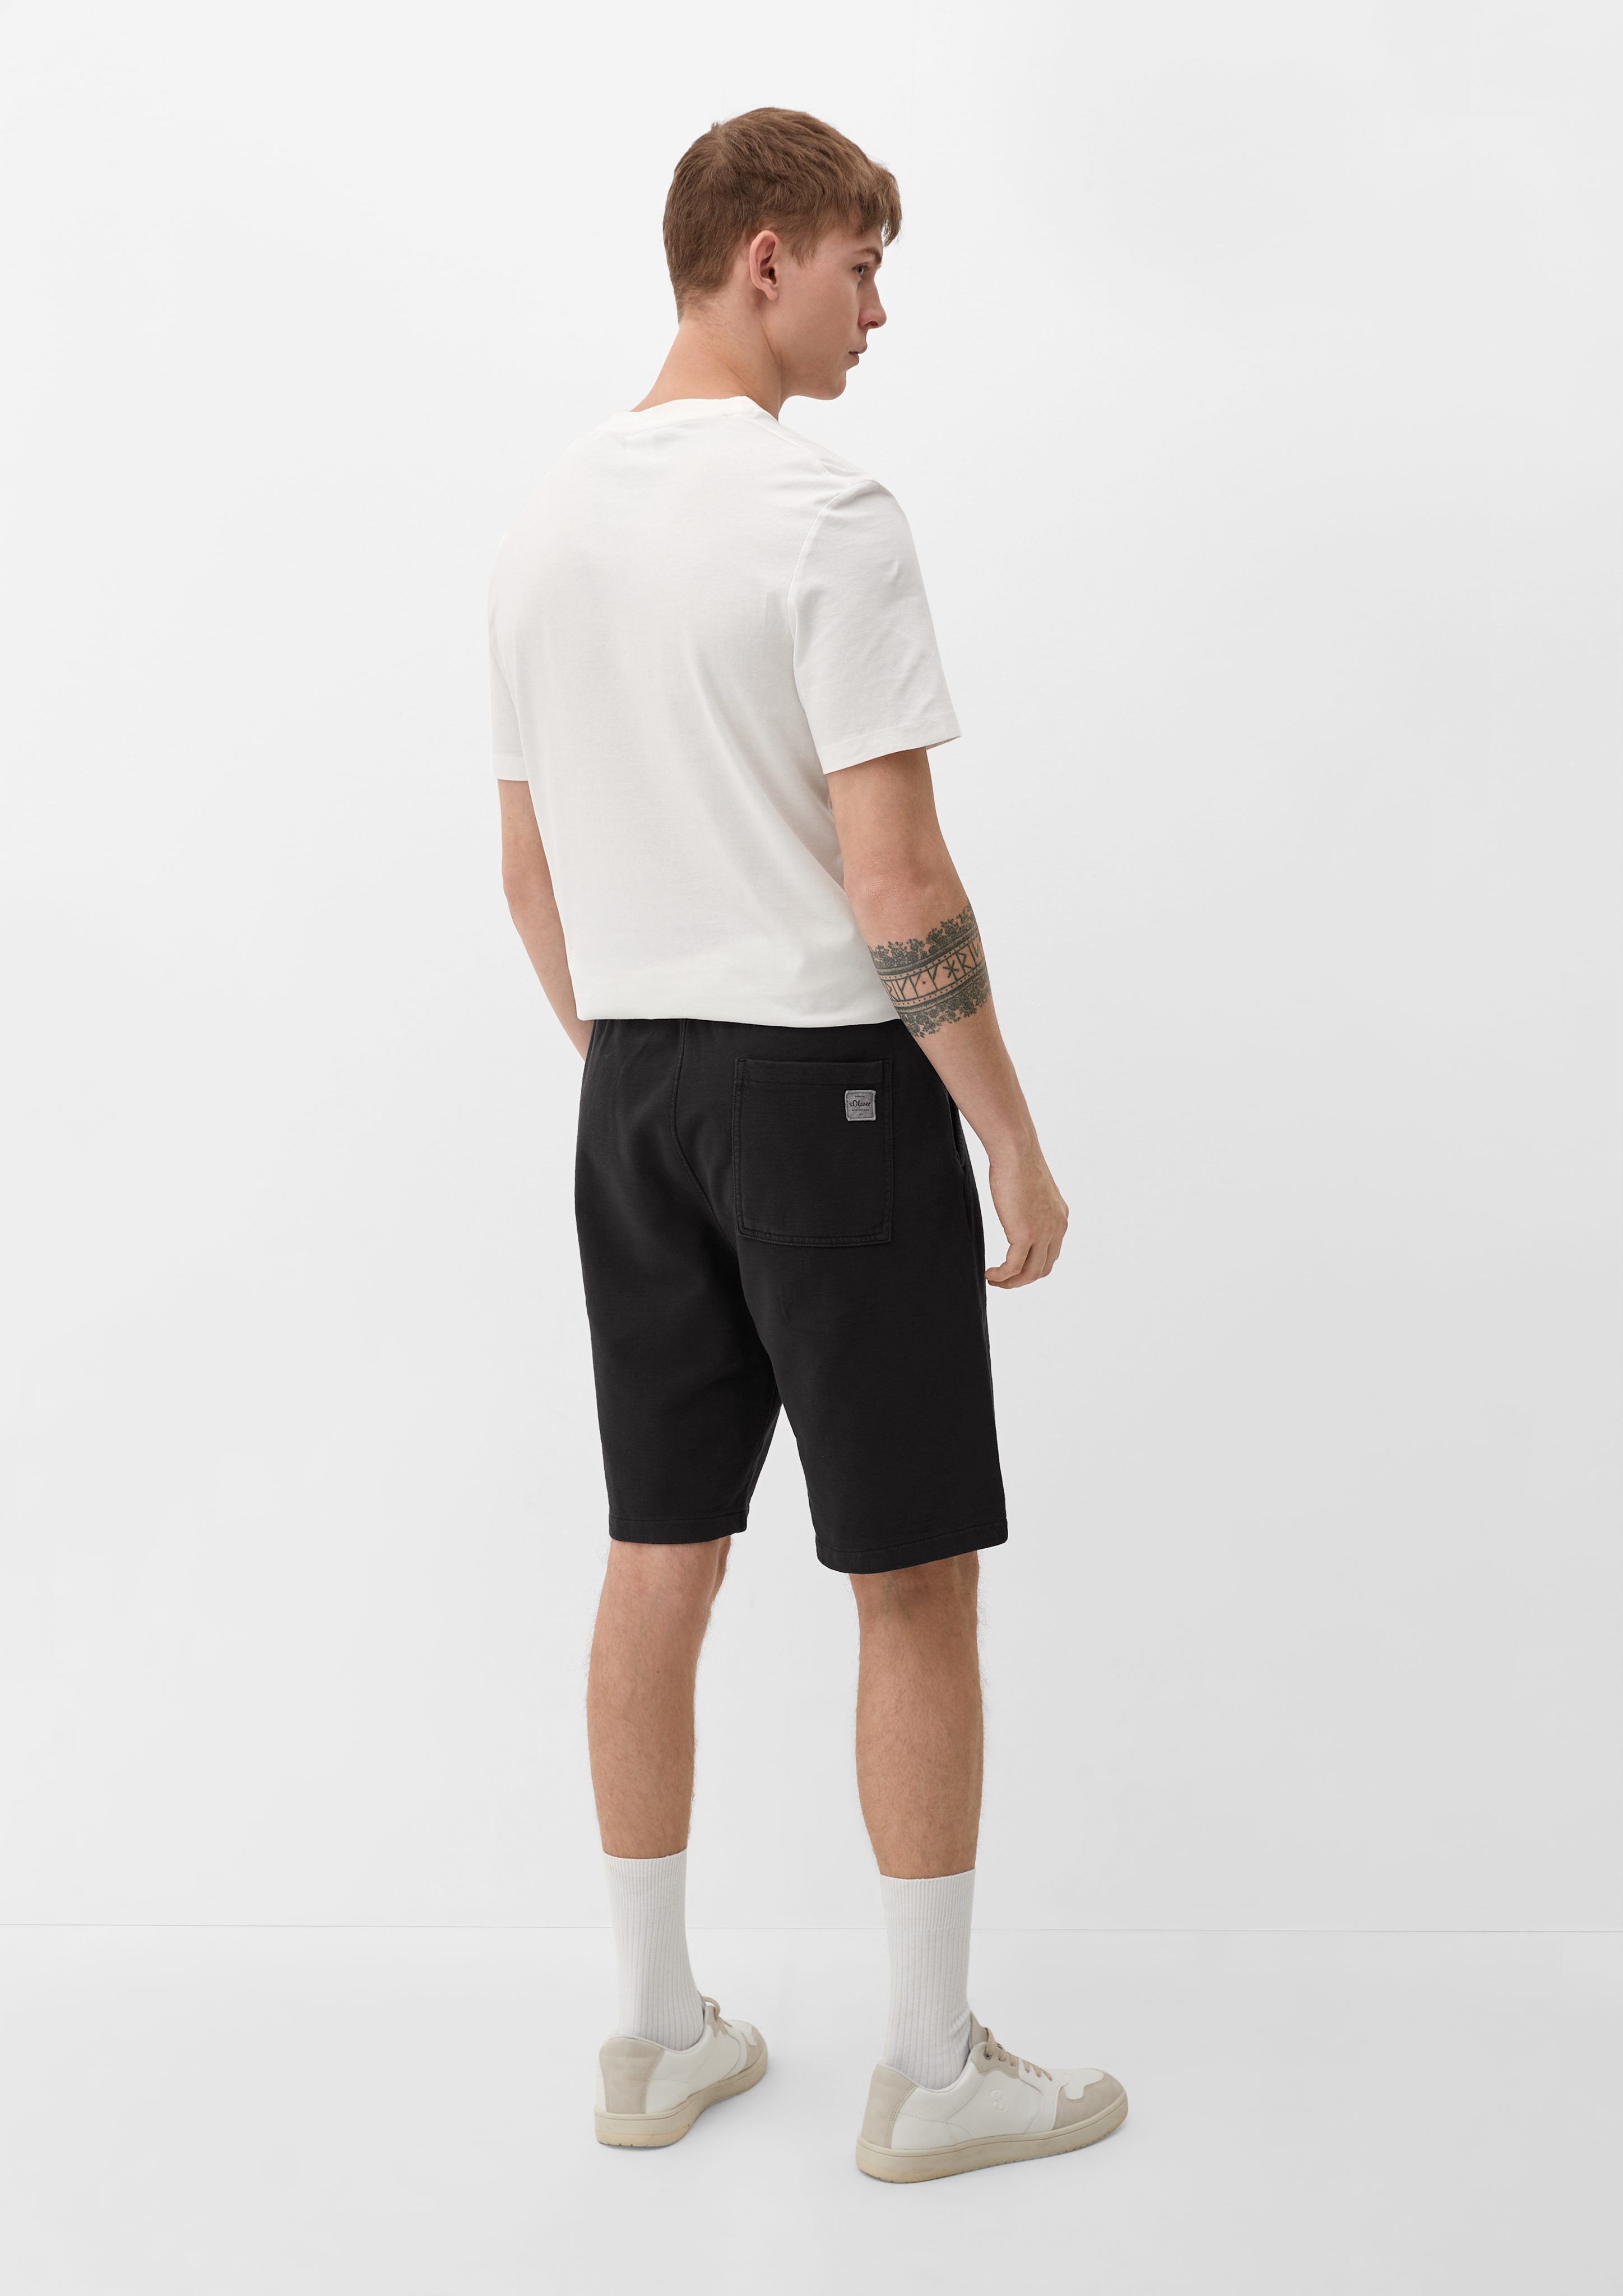 s.Oliver Bermudas Relaxed: Sweatpants mit Durchzugkordel, Label-Patch Dye, Elastikbund schwarz Garment